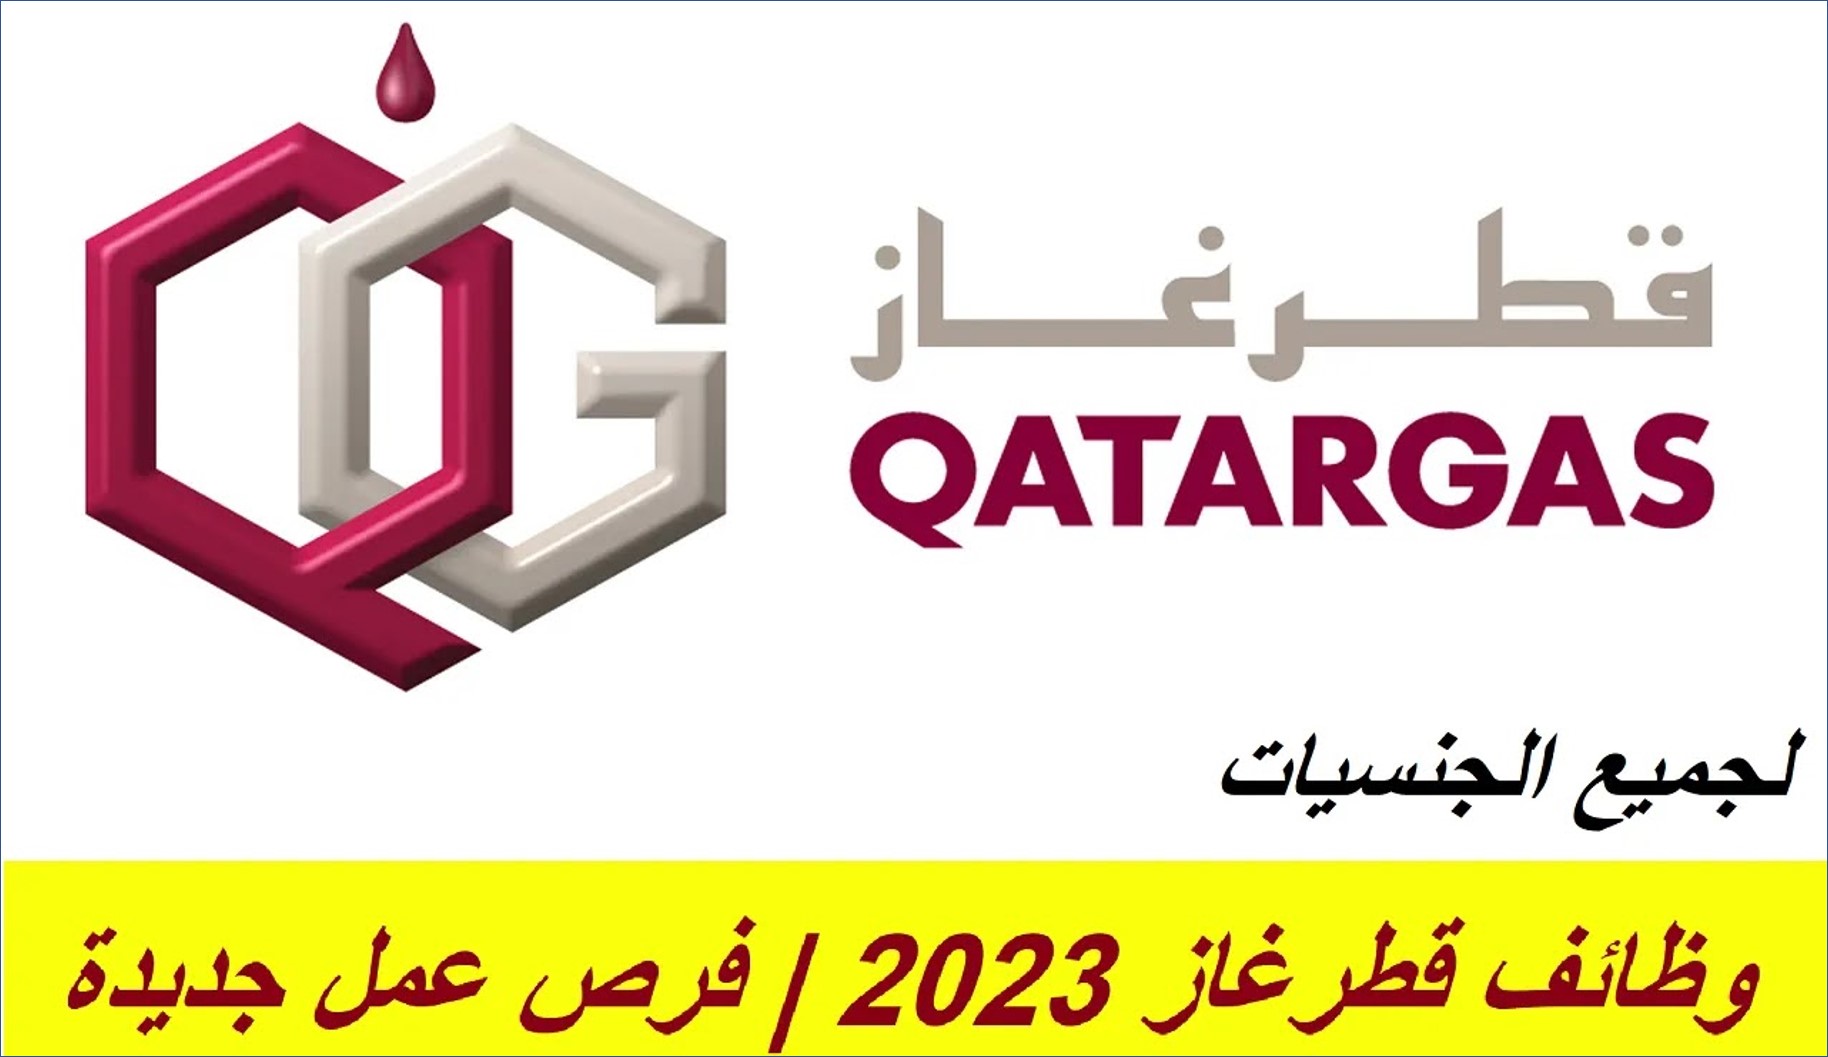 شركة قطر غاز تعلن عن فرص وظيفية جديدة بمختلف المجالات